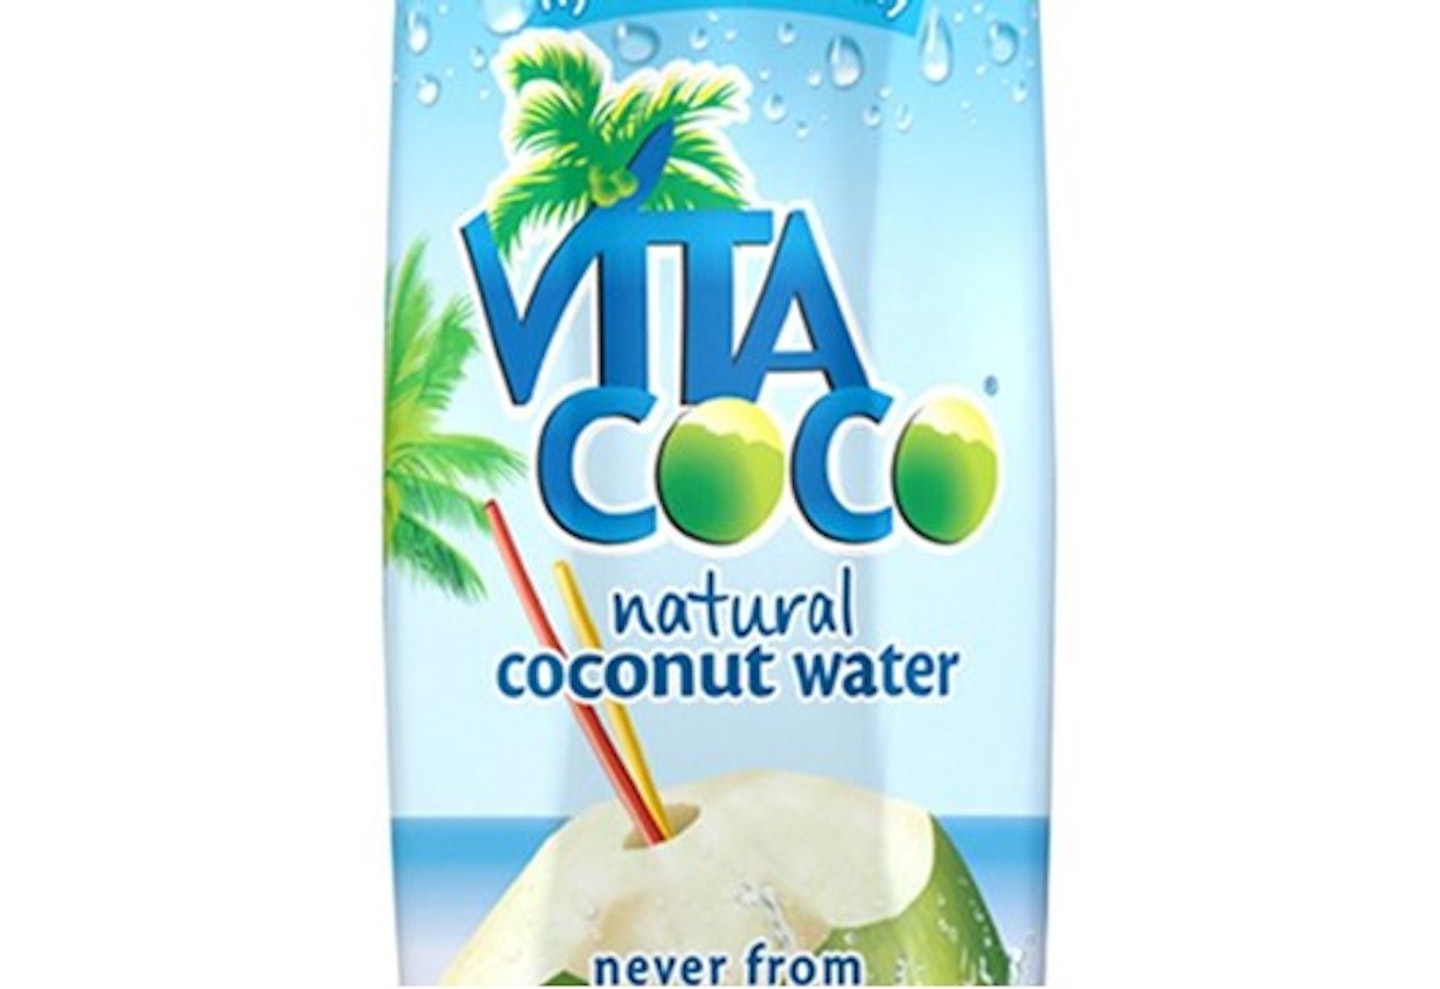 Vita Coco Coconut Water, £2.15